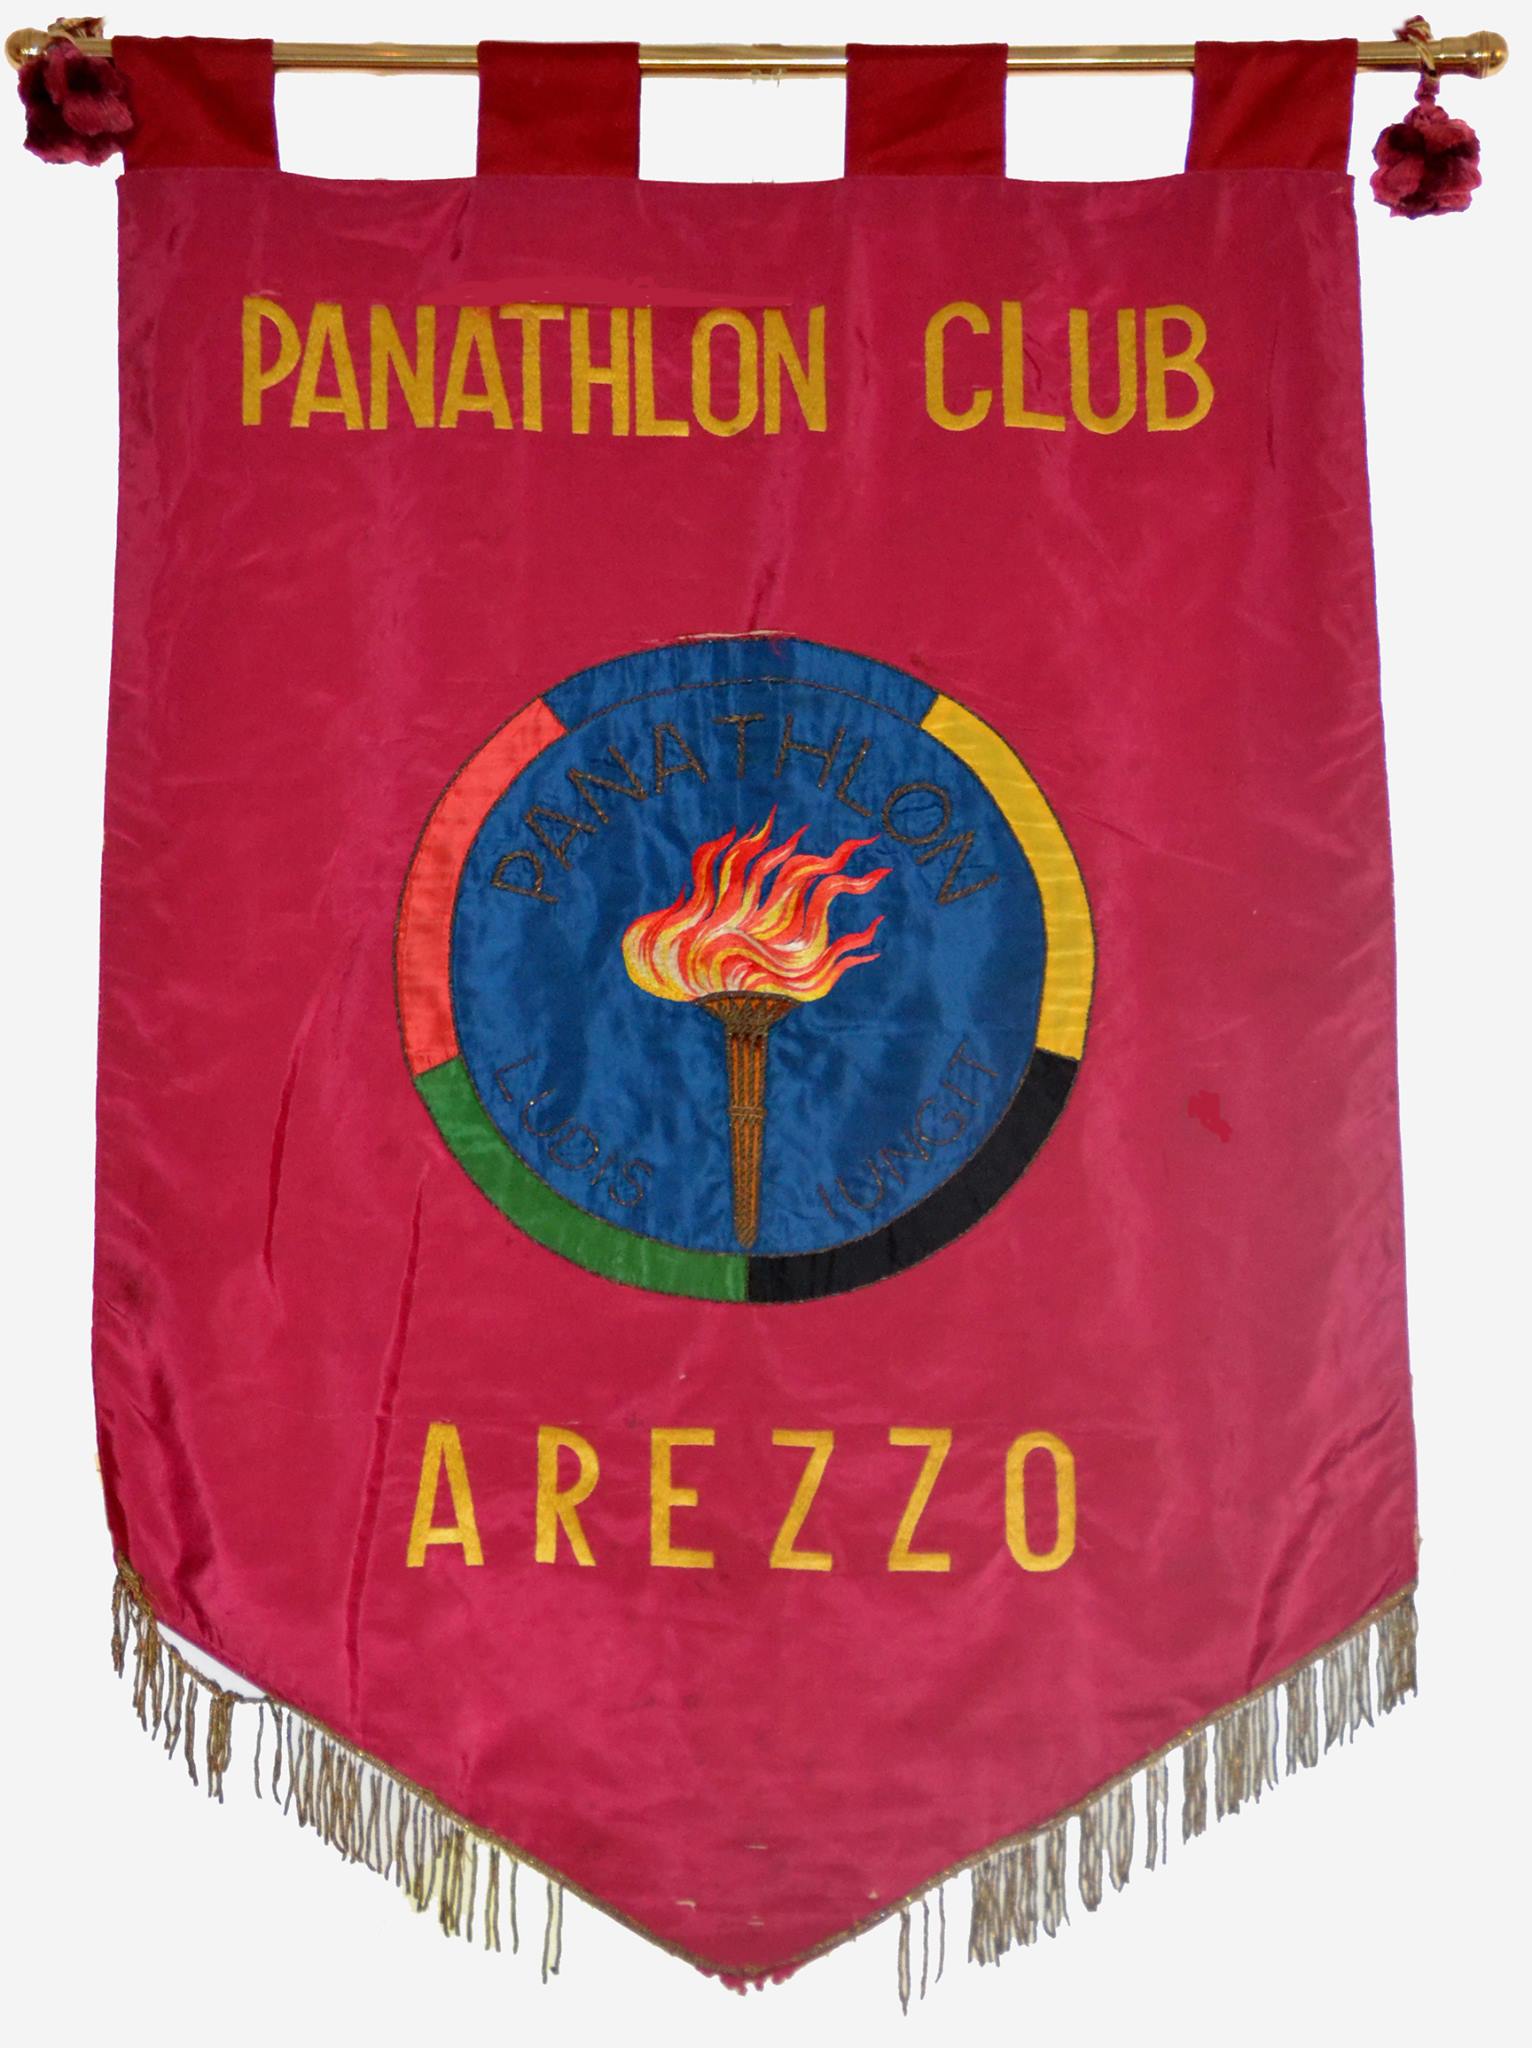 Il Panathlon Club Arezzo celebra la “Giornata mondiale del Fair Play”